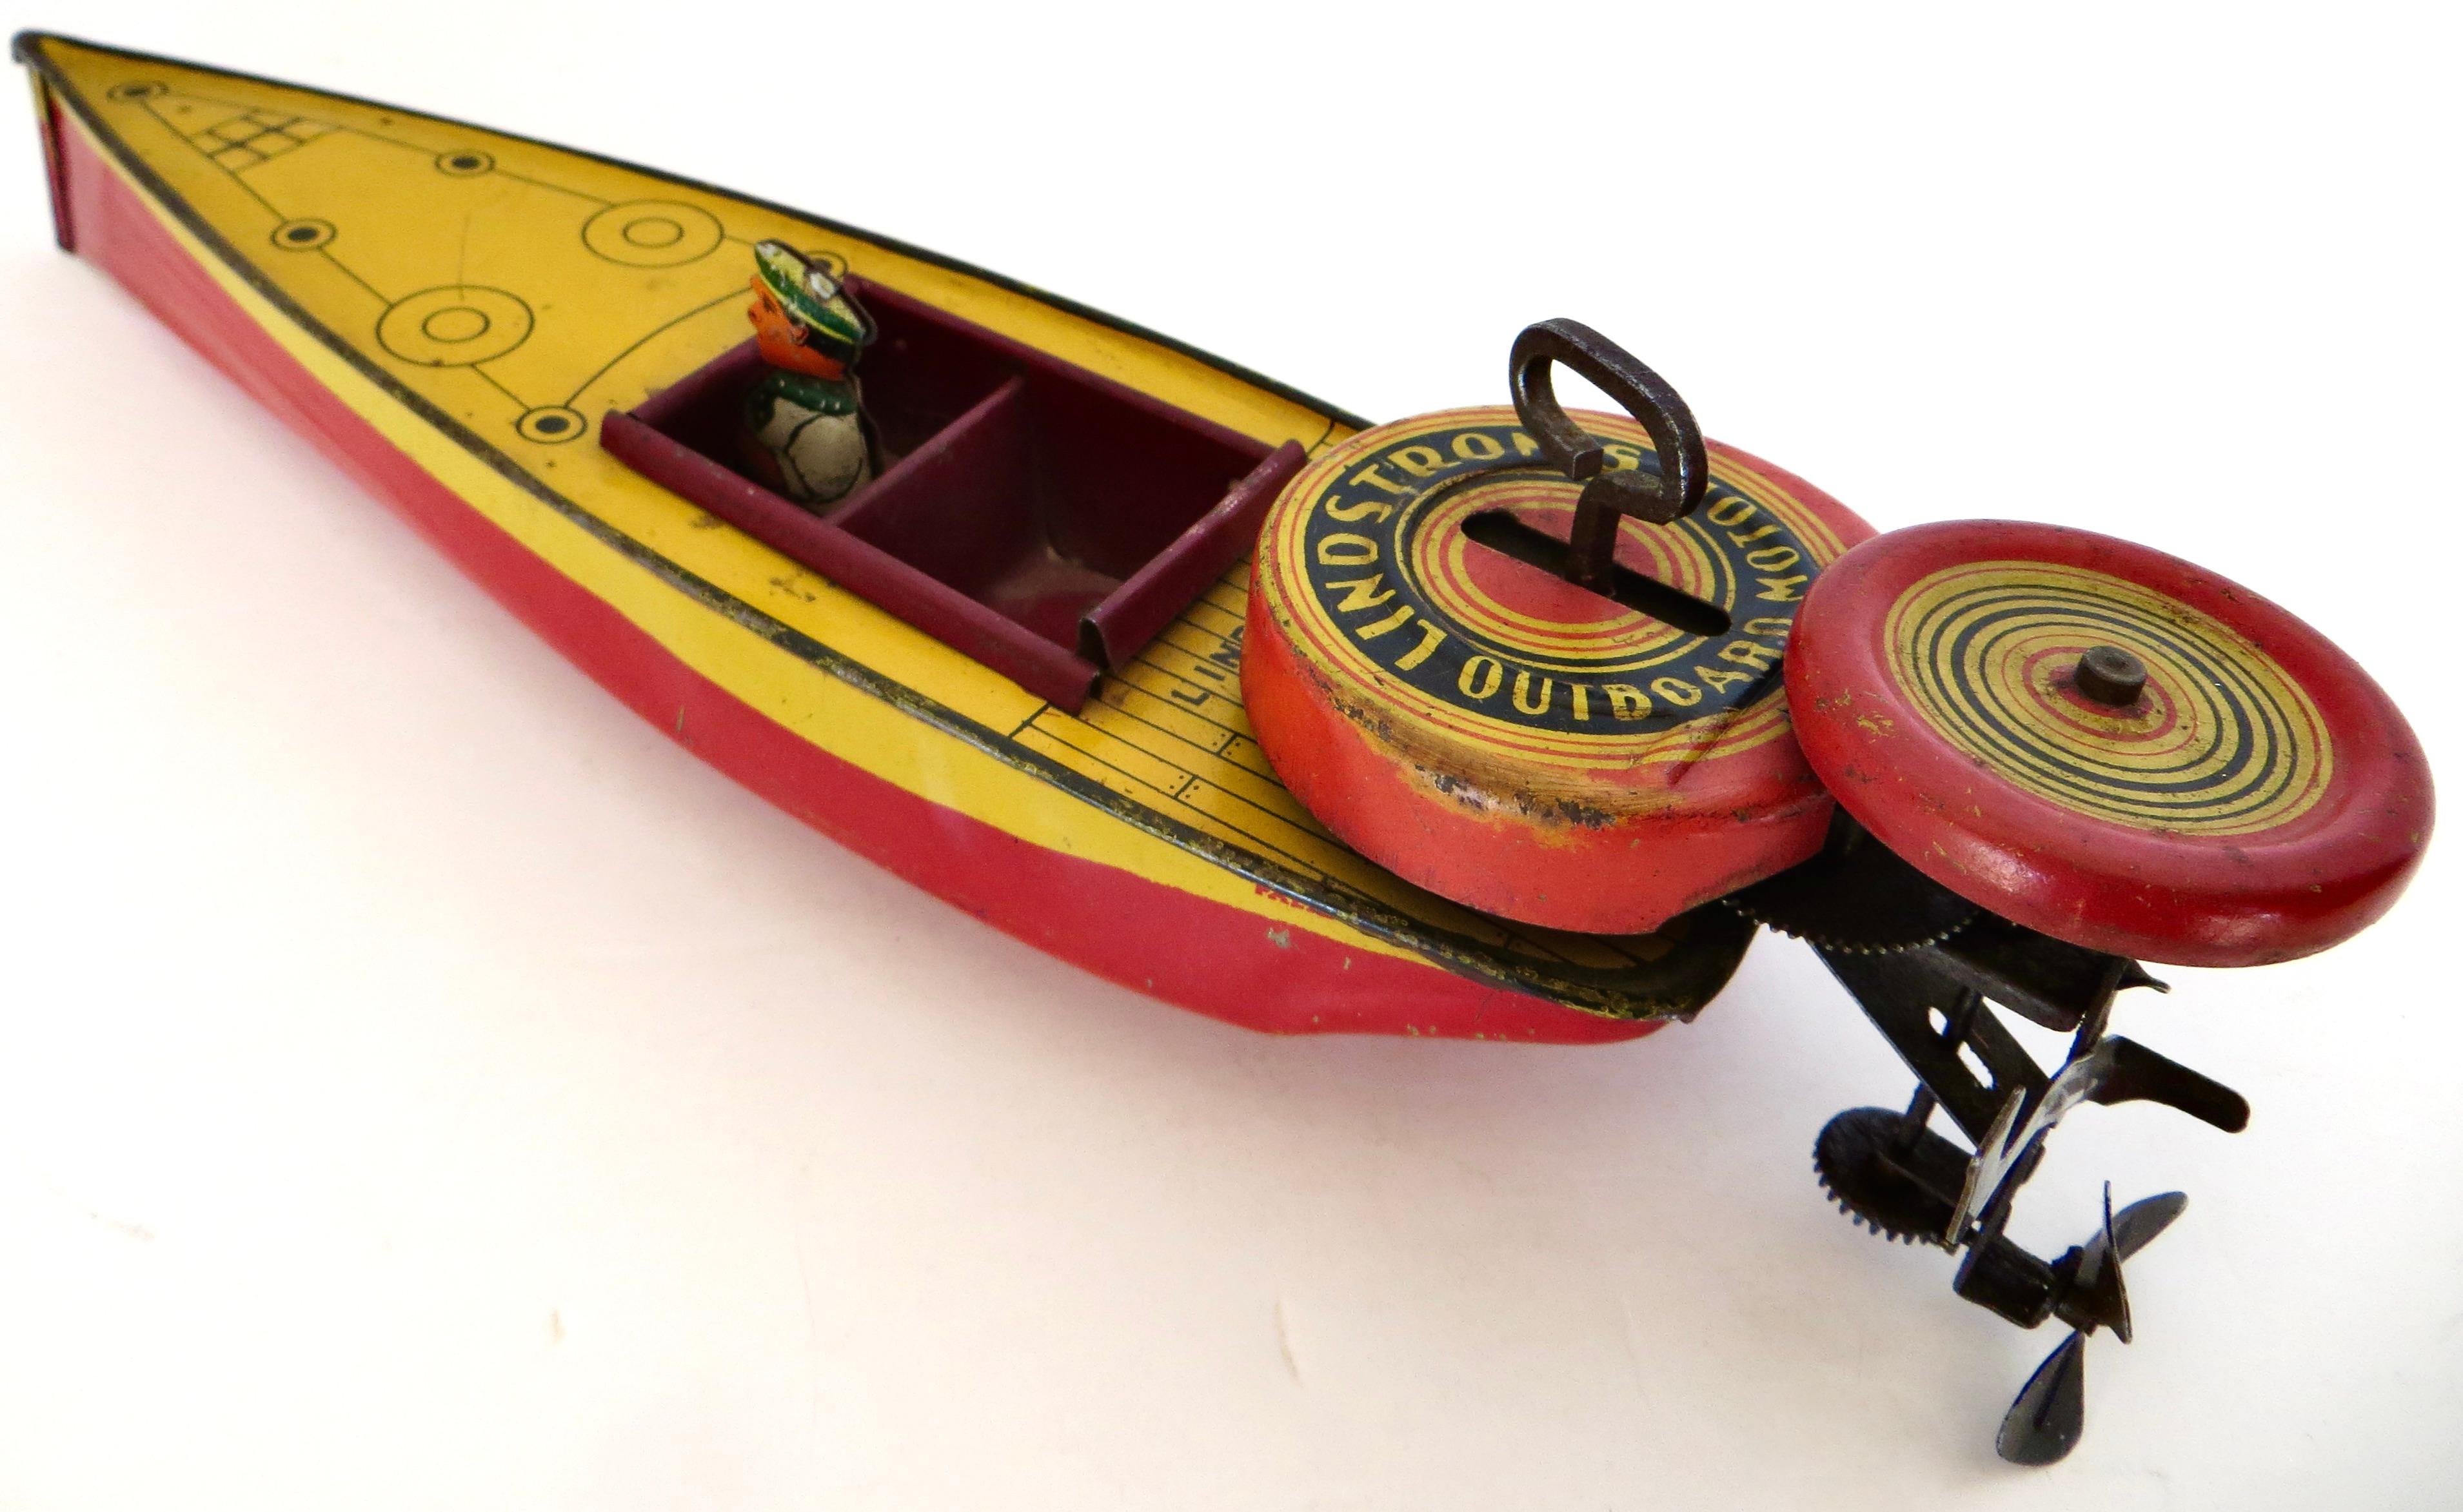 Vintage-Spielzeug-Schnellboot der Lindstrom Toy Company aus Bridgeport, Connecticut, ca. 1933 oder früher. Die Firma Lindstrom wurde 1913 gegründet und stellte bis zum Zweiten Weltkrieg hochwertige Aufziehspielzeuge aus Blech her, bevor sie ihr